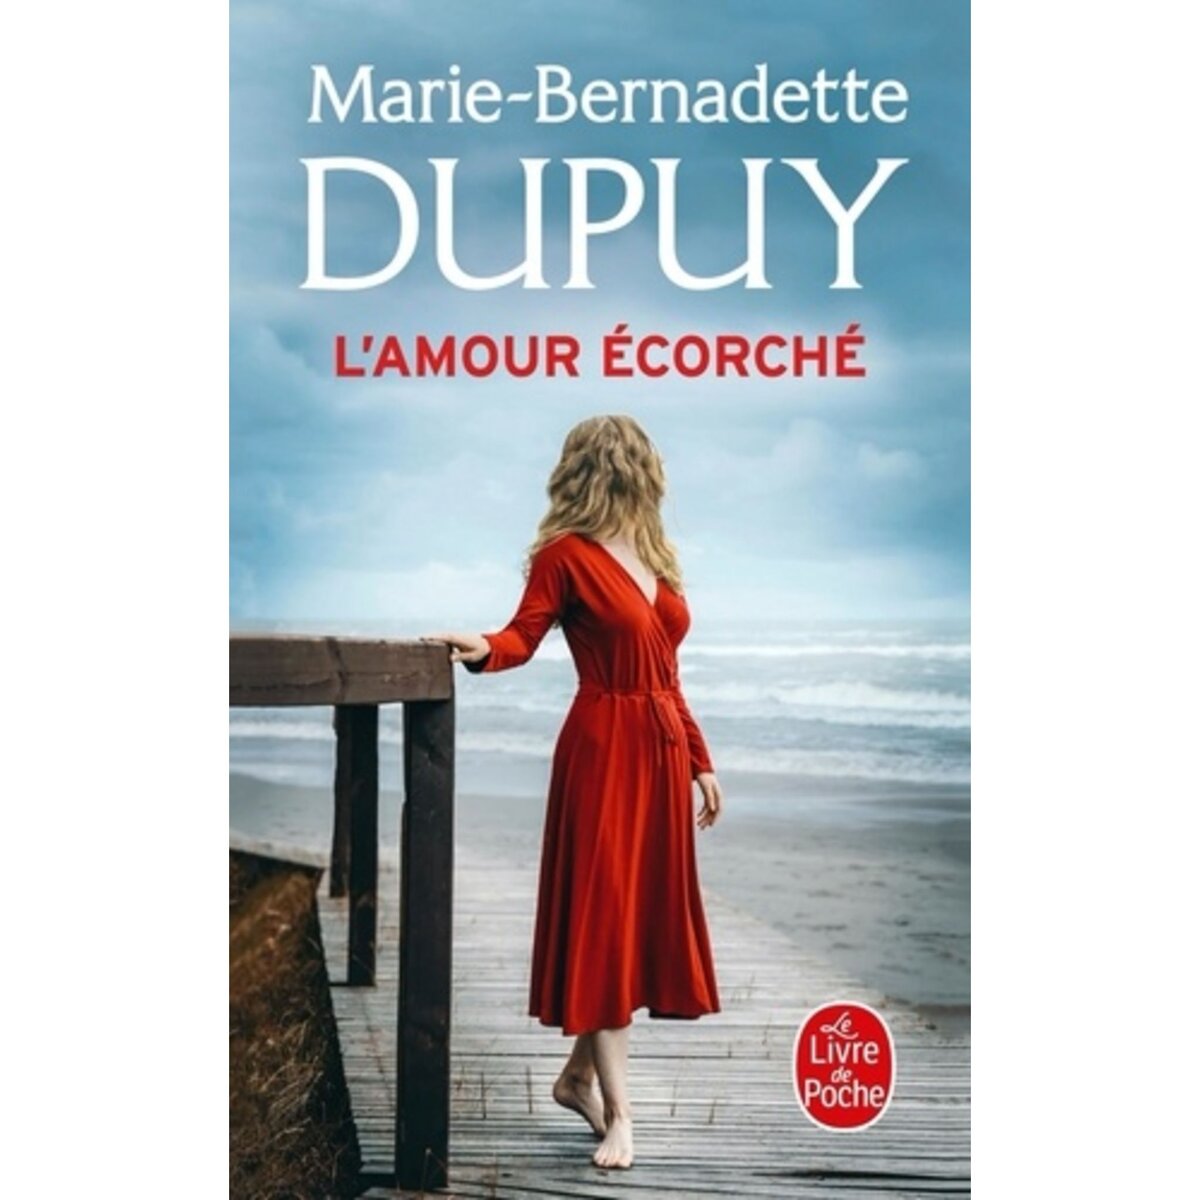  L'AMOUR ECORCHE, Dupuy Marie-Bernadette